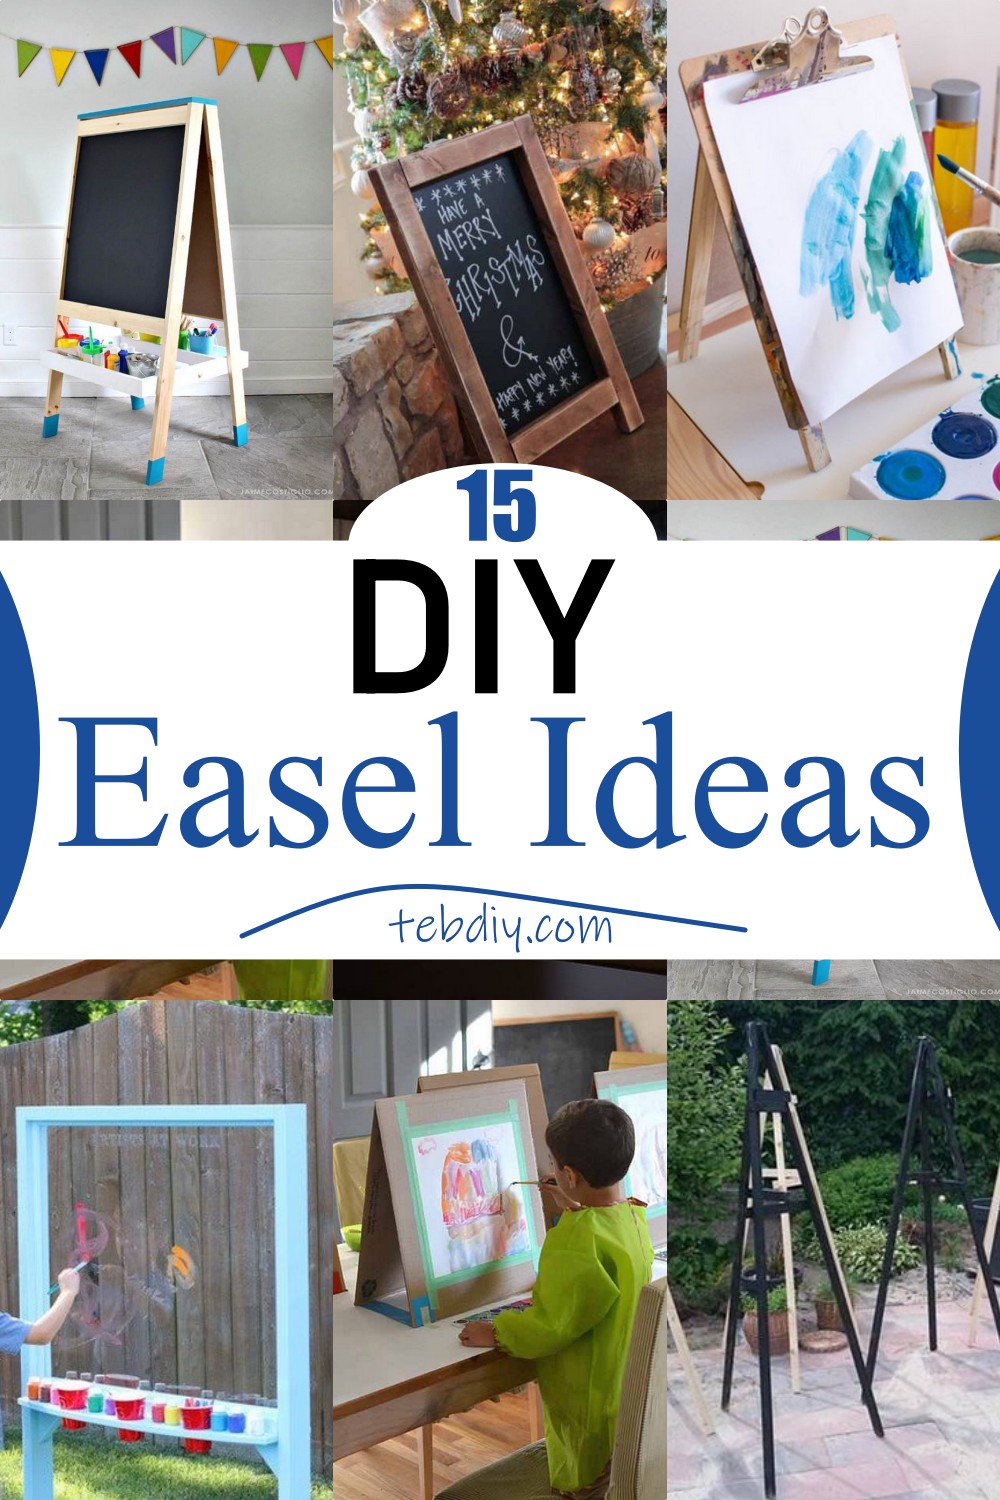 15 DIY Easel Ideas